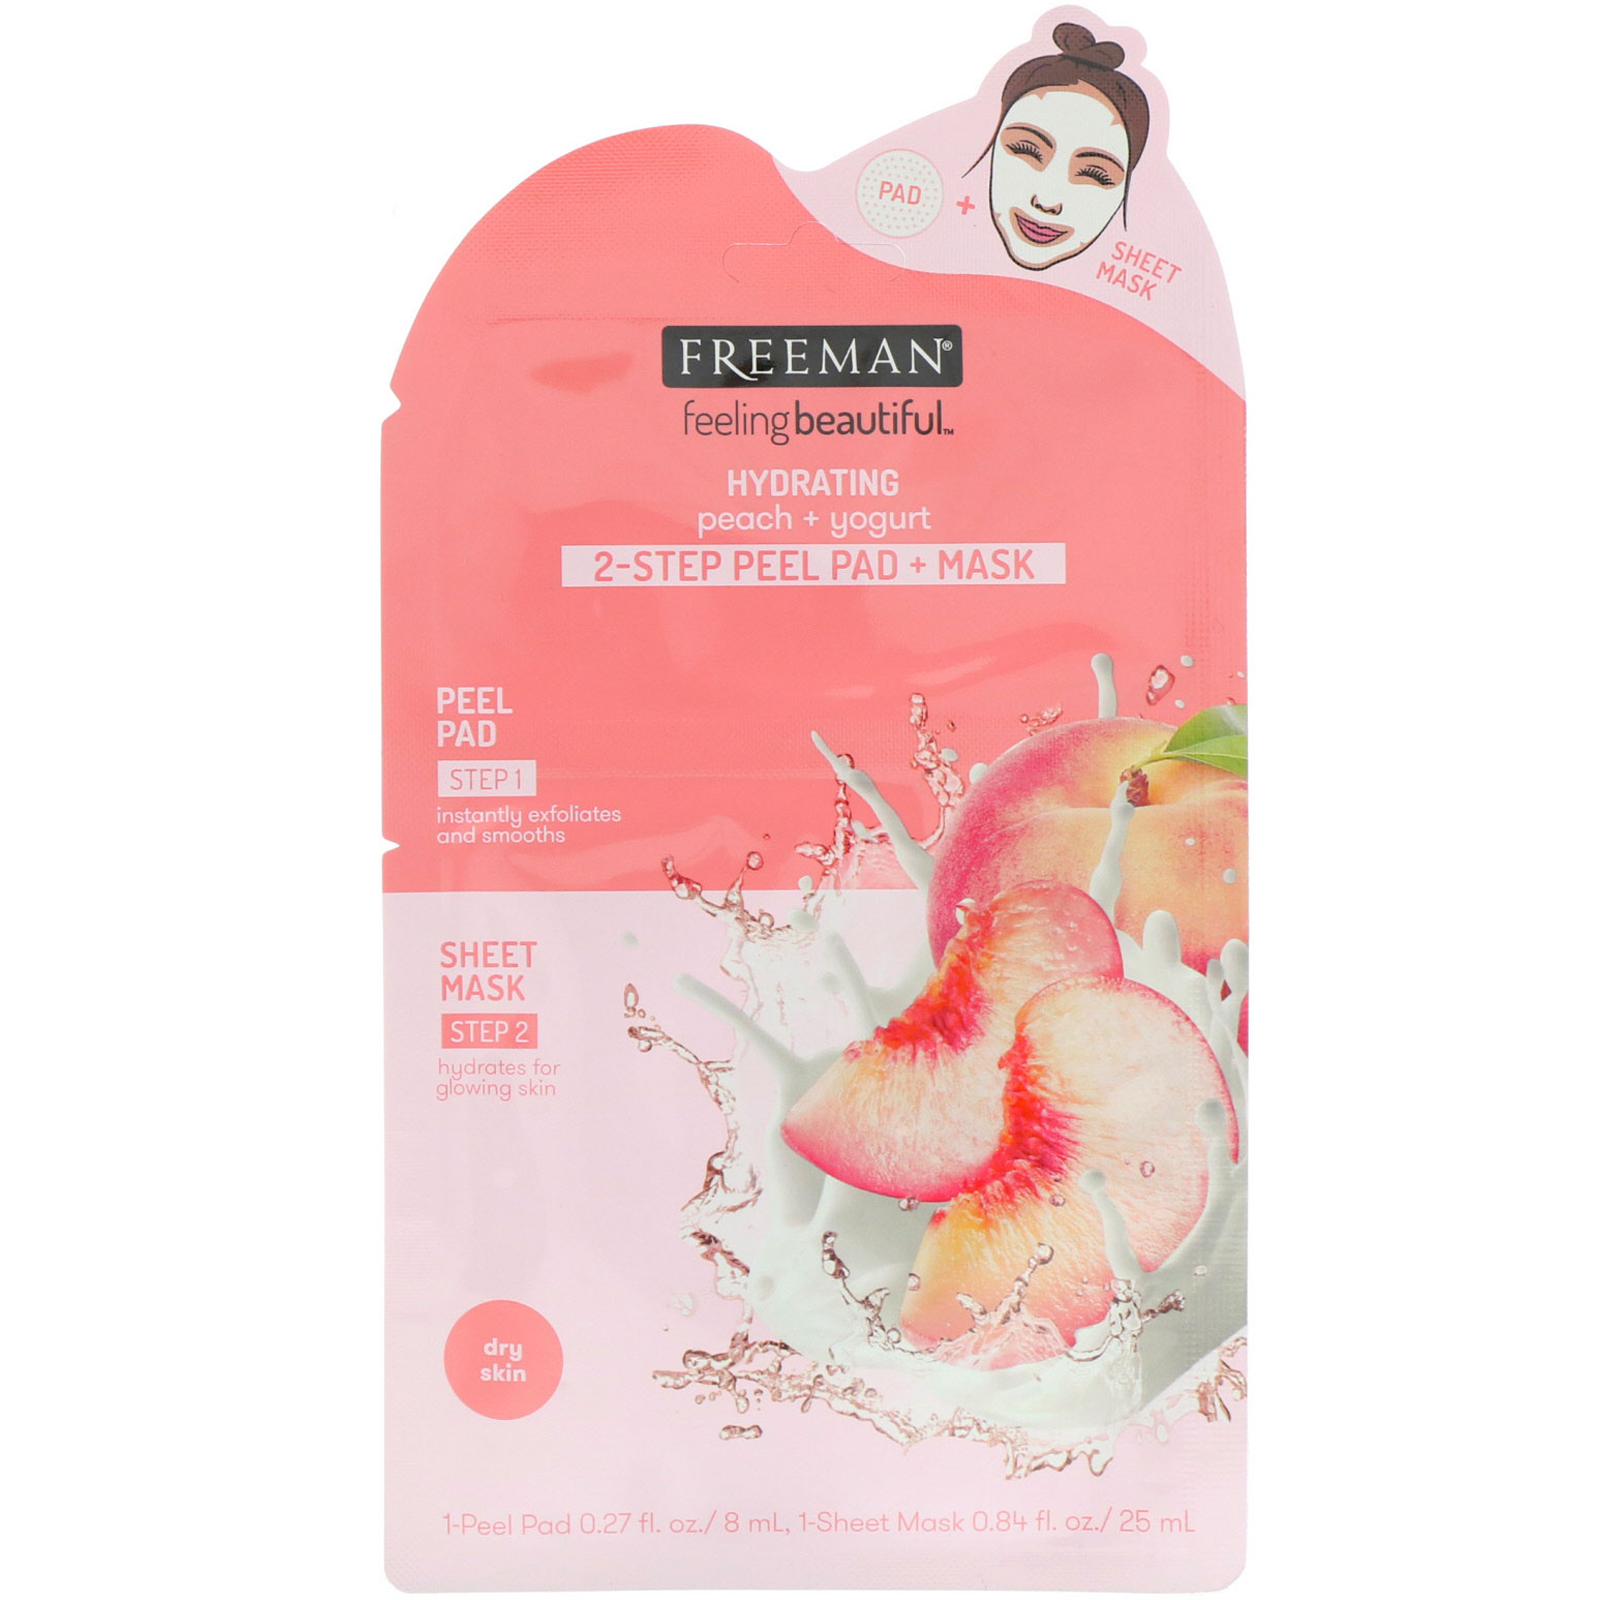 Freeman Beauty, Feeling Beautiful, подушечки для пилинга + маска для 2-этапной процедуры, увлажняющие, персик + йогурт, 1 подушечка для пилинга и 1 маска-салфетка